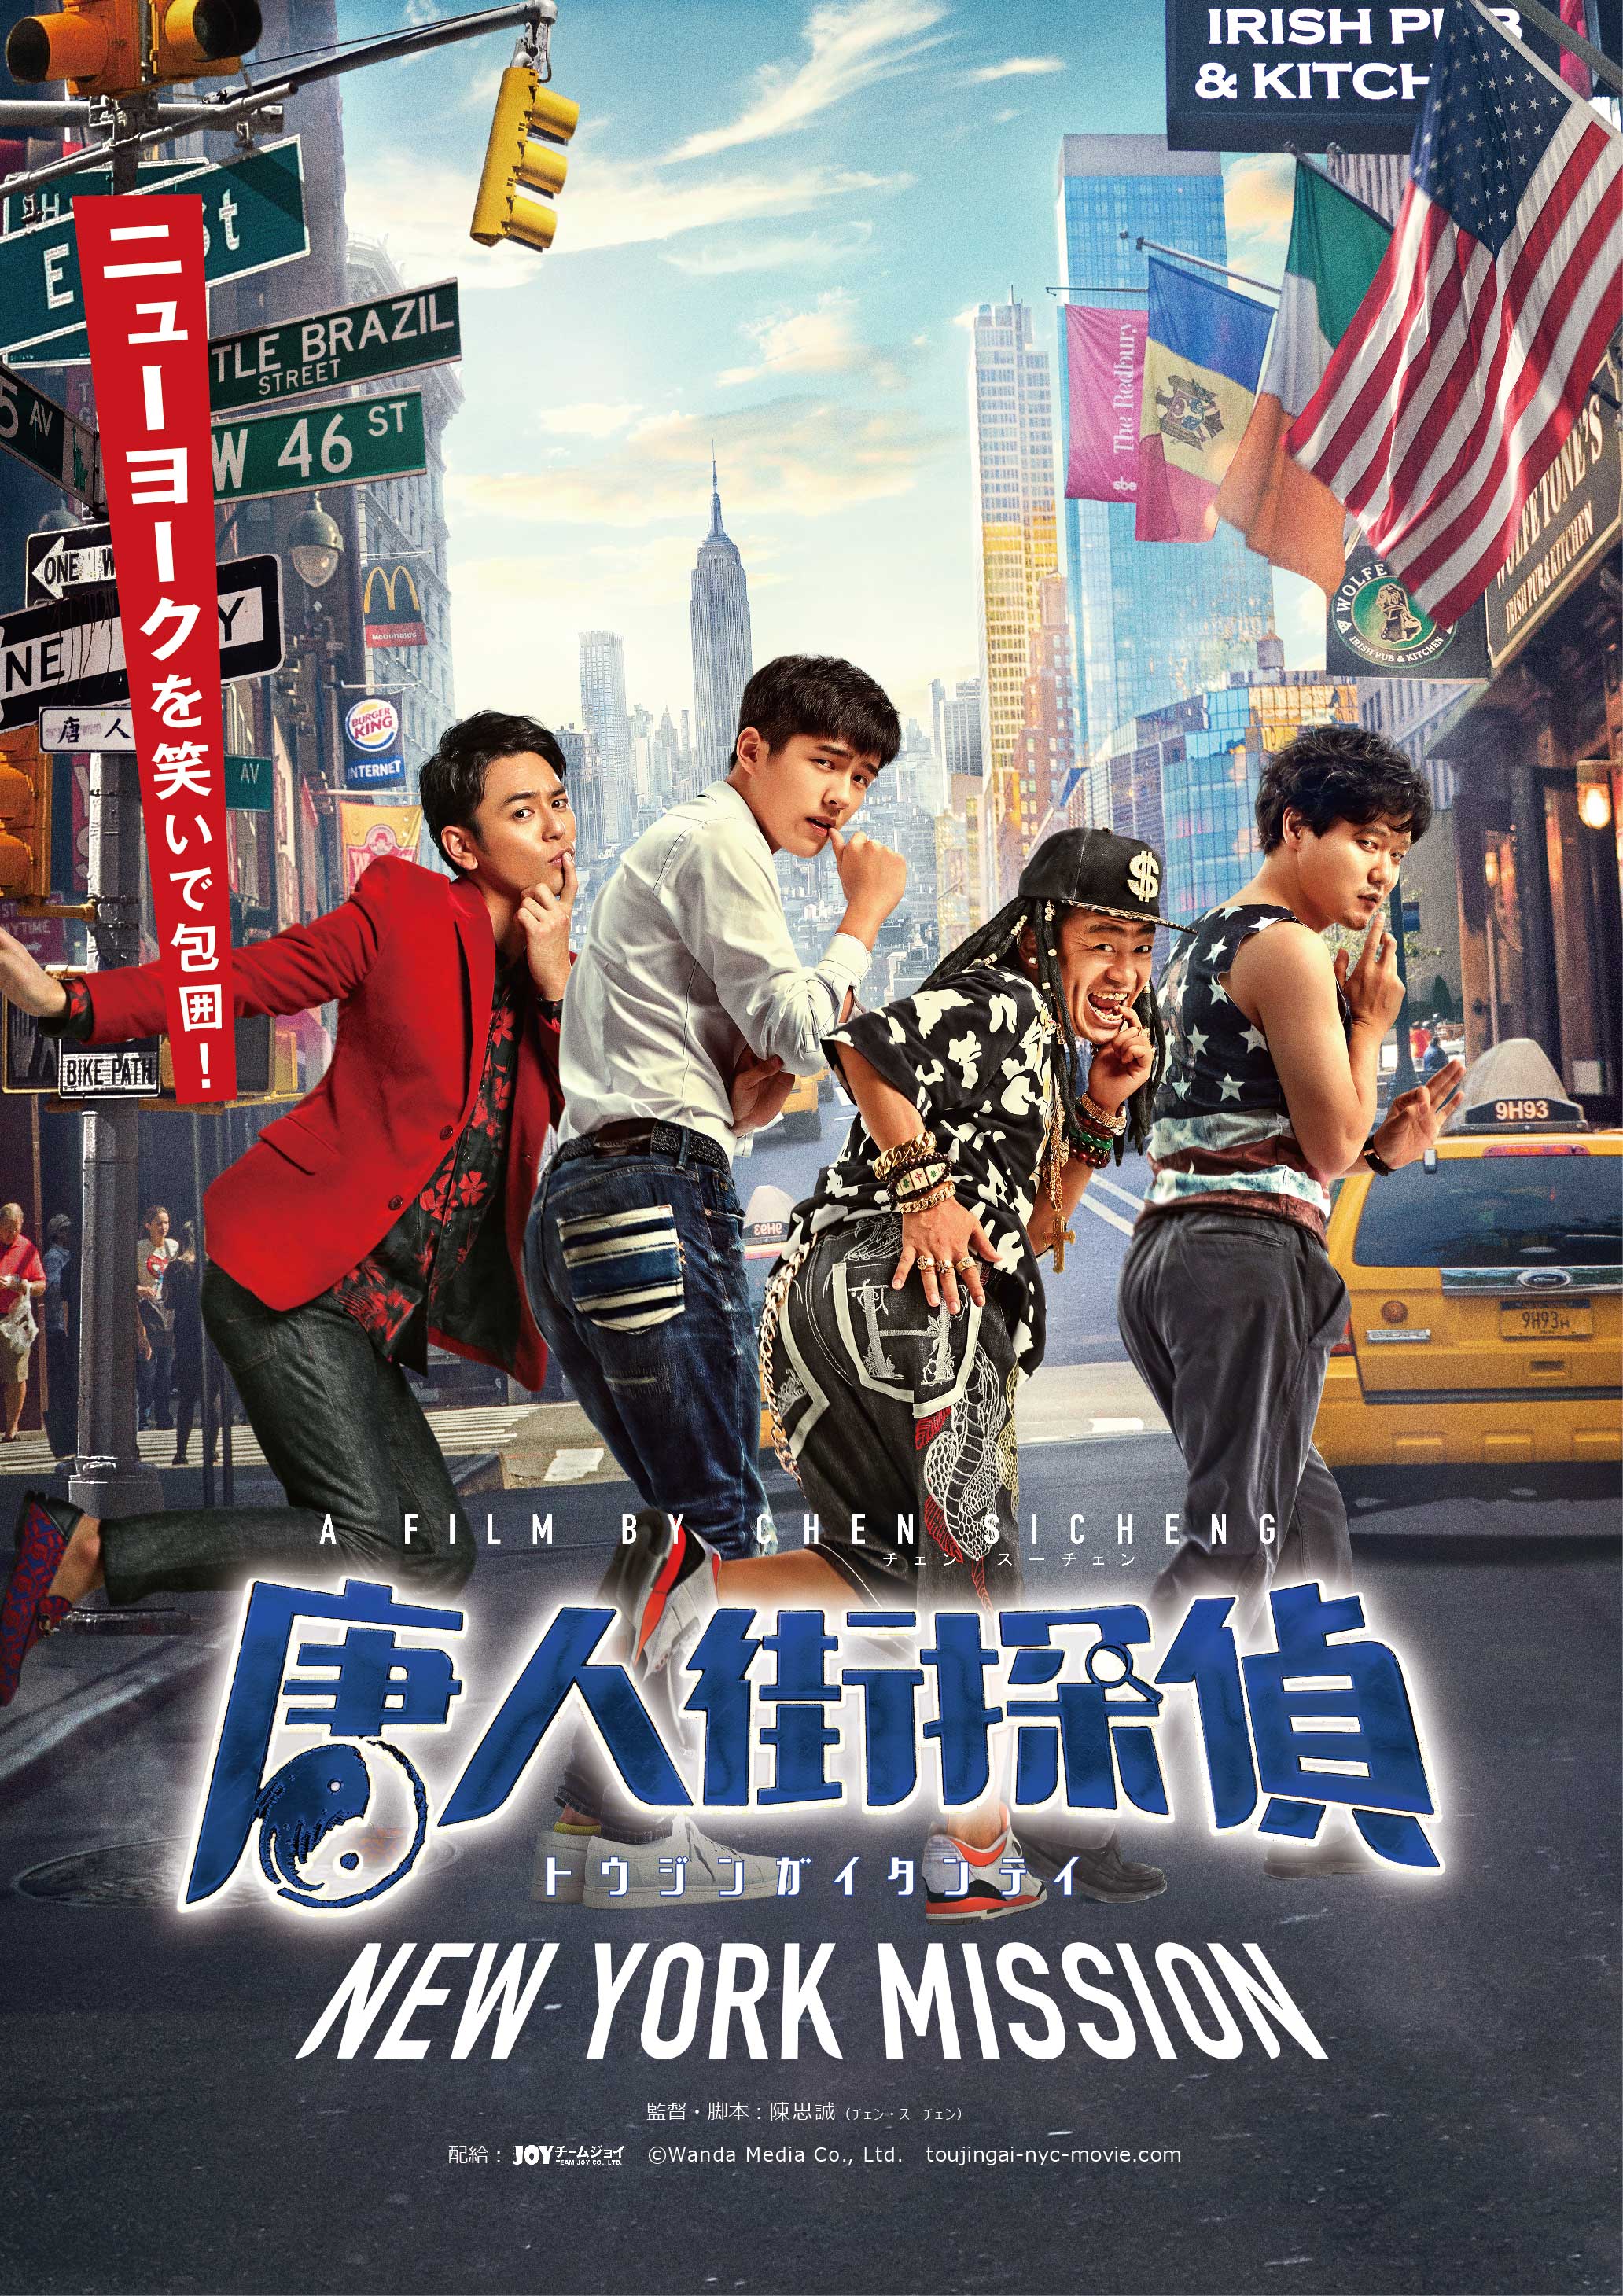 喜剧片《唐人街探案2》将于11月12日正在日本上映